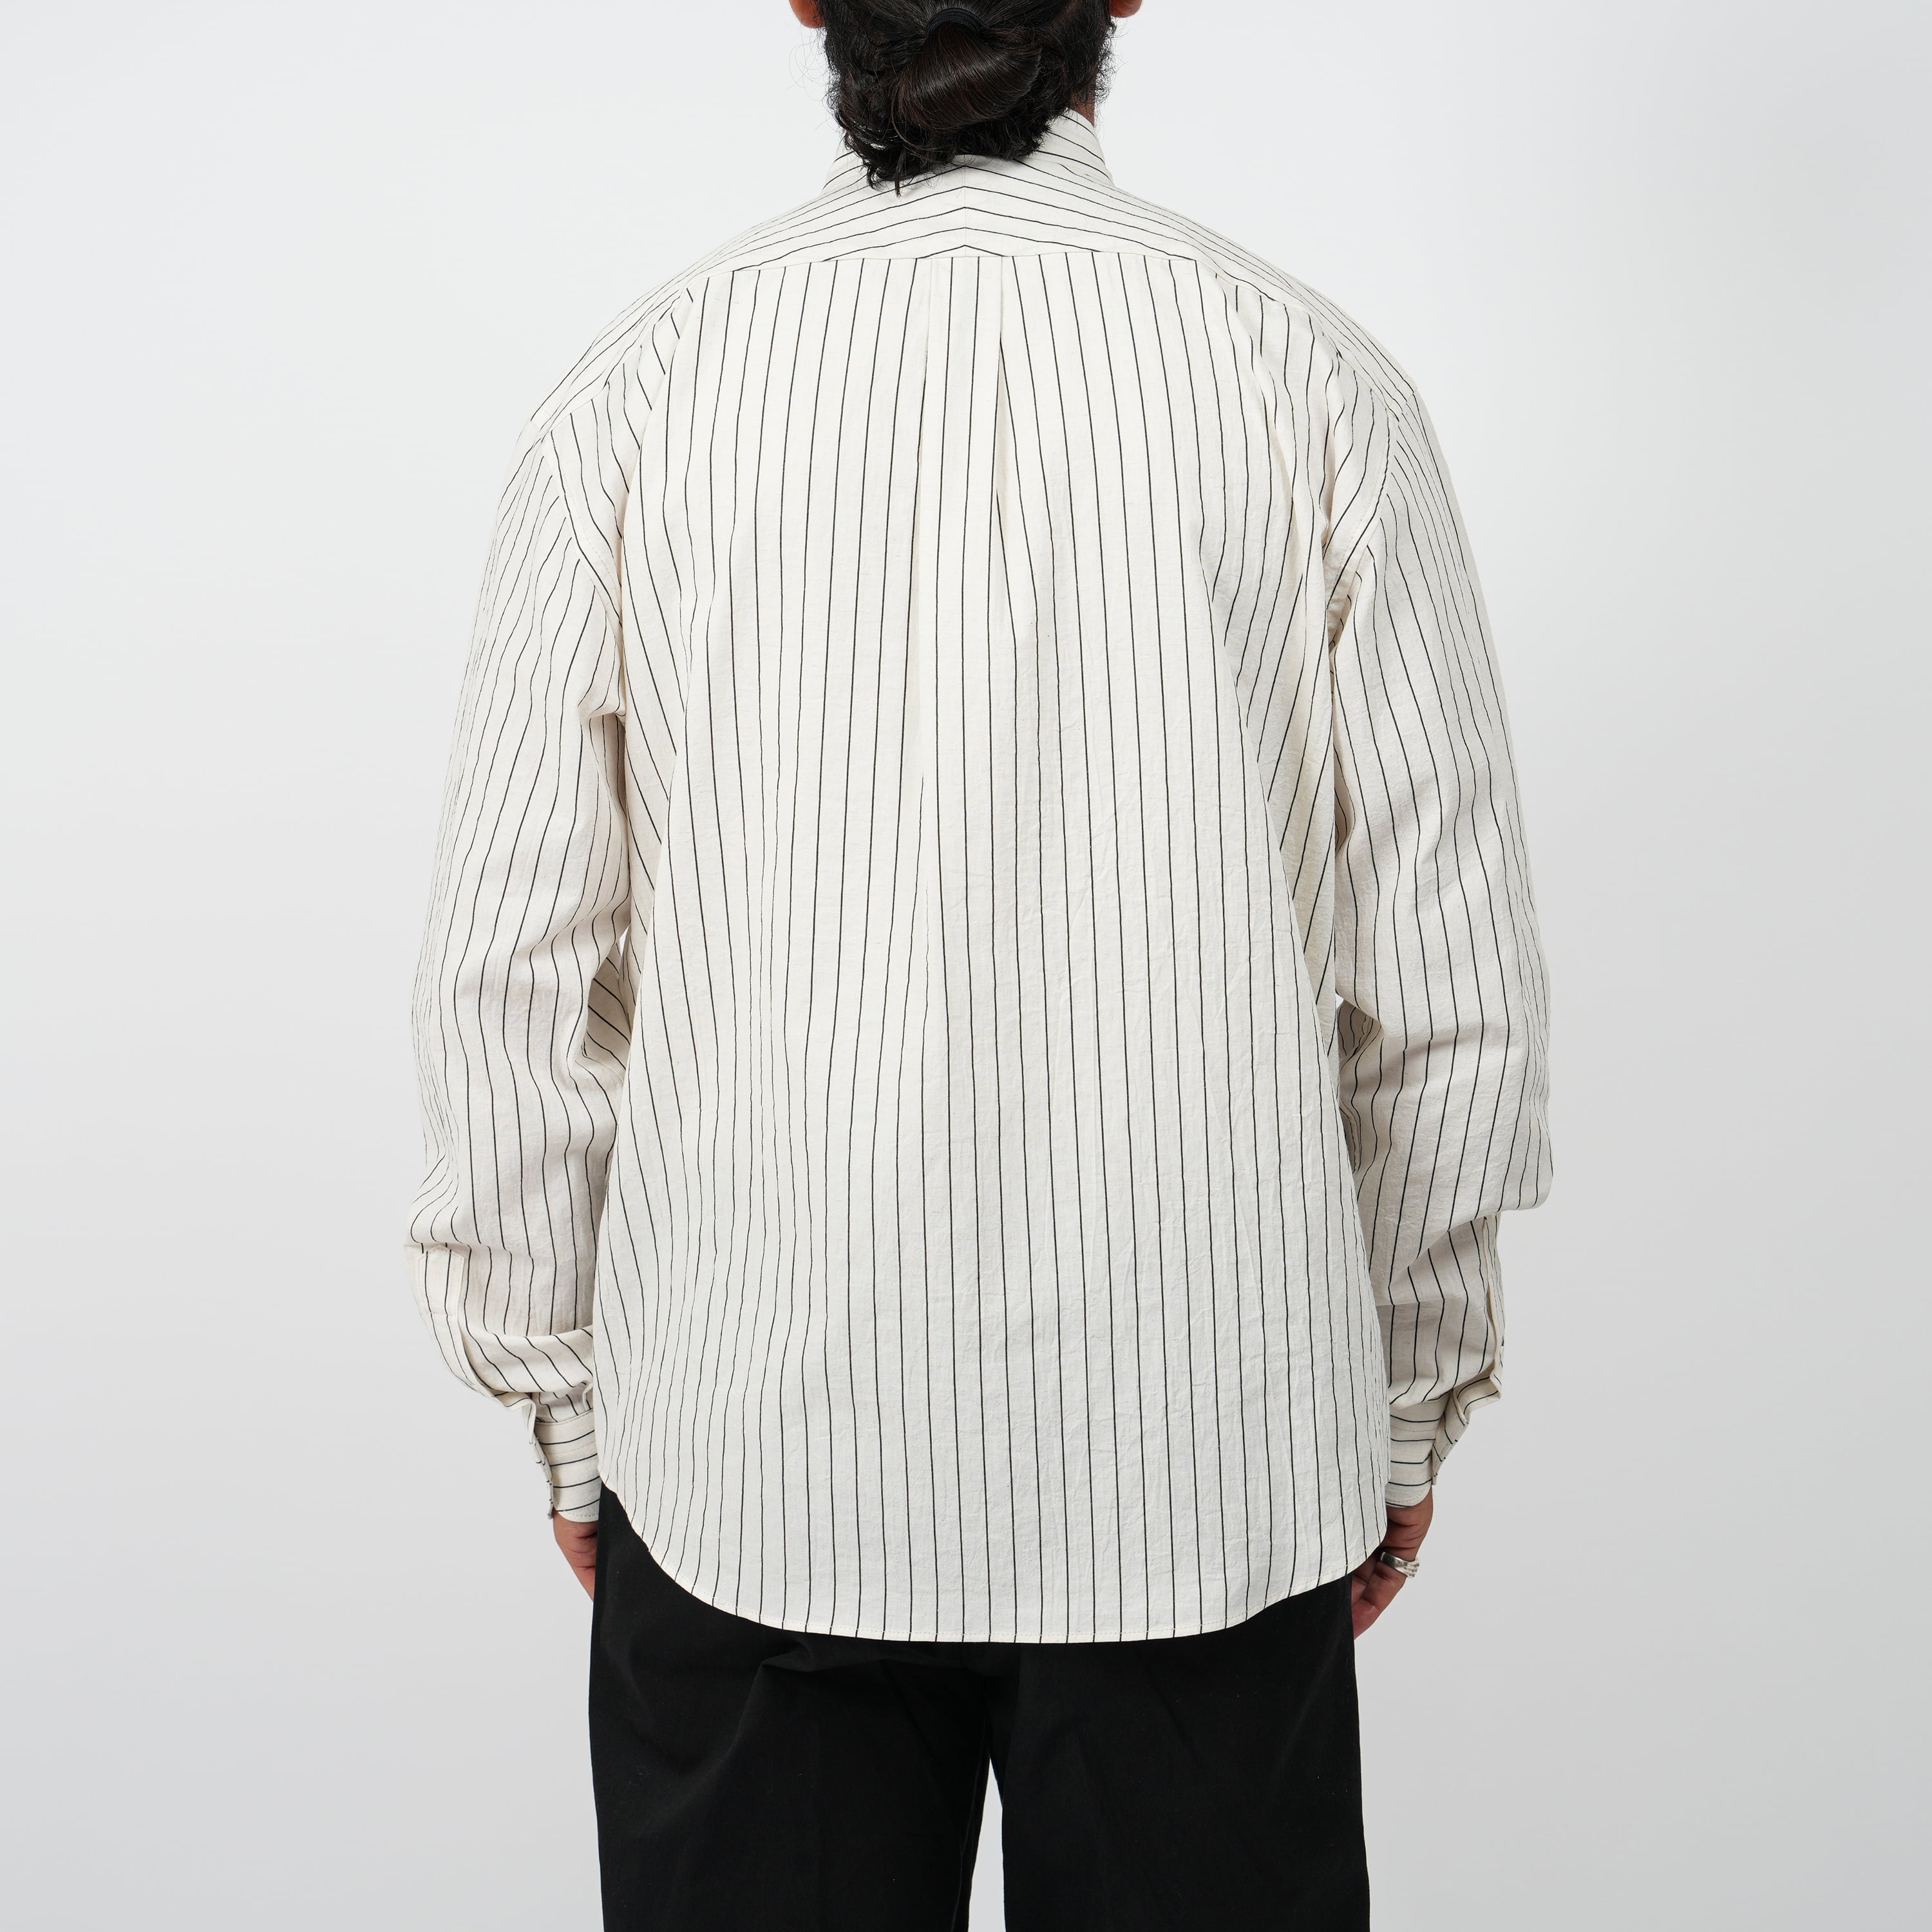 【2plan】stripe linen shirt raucohouse